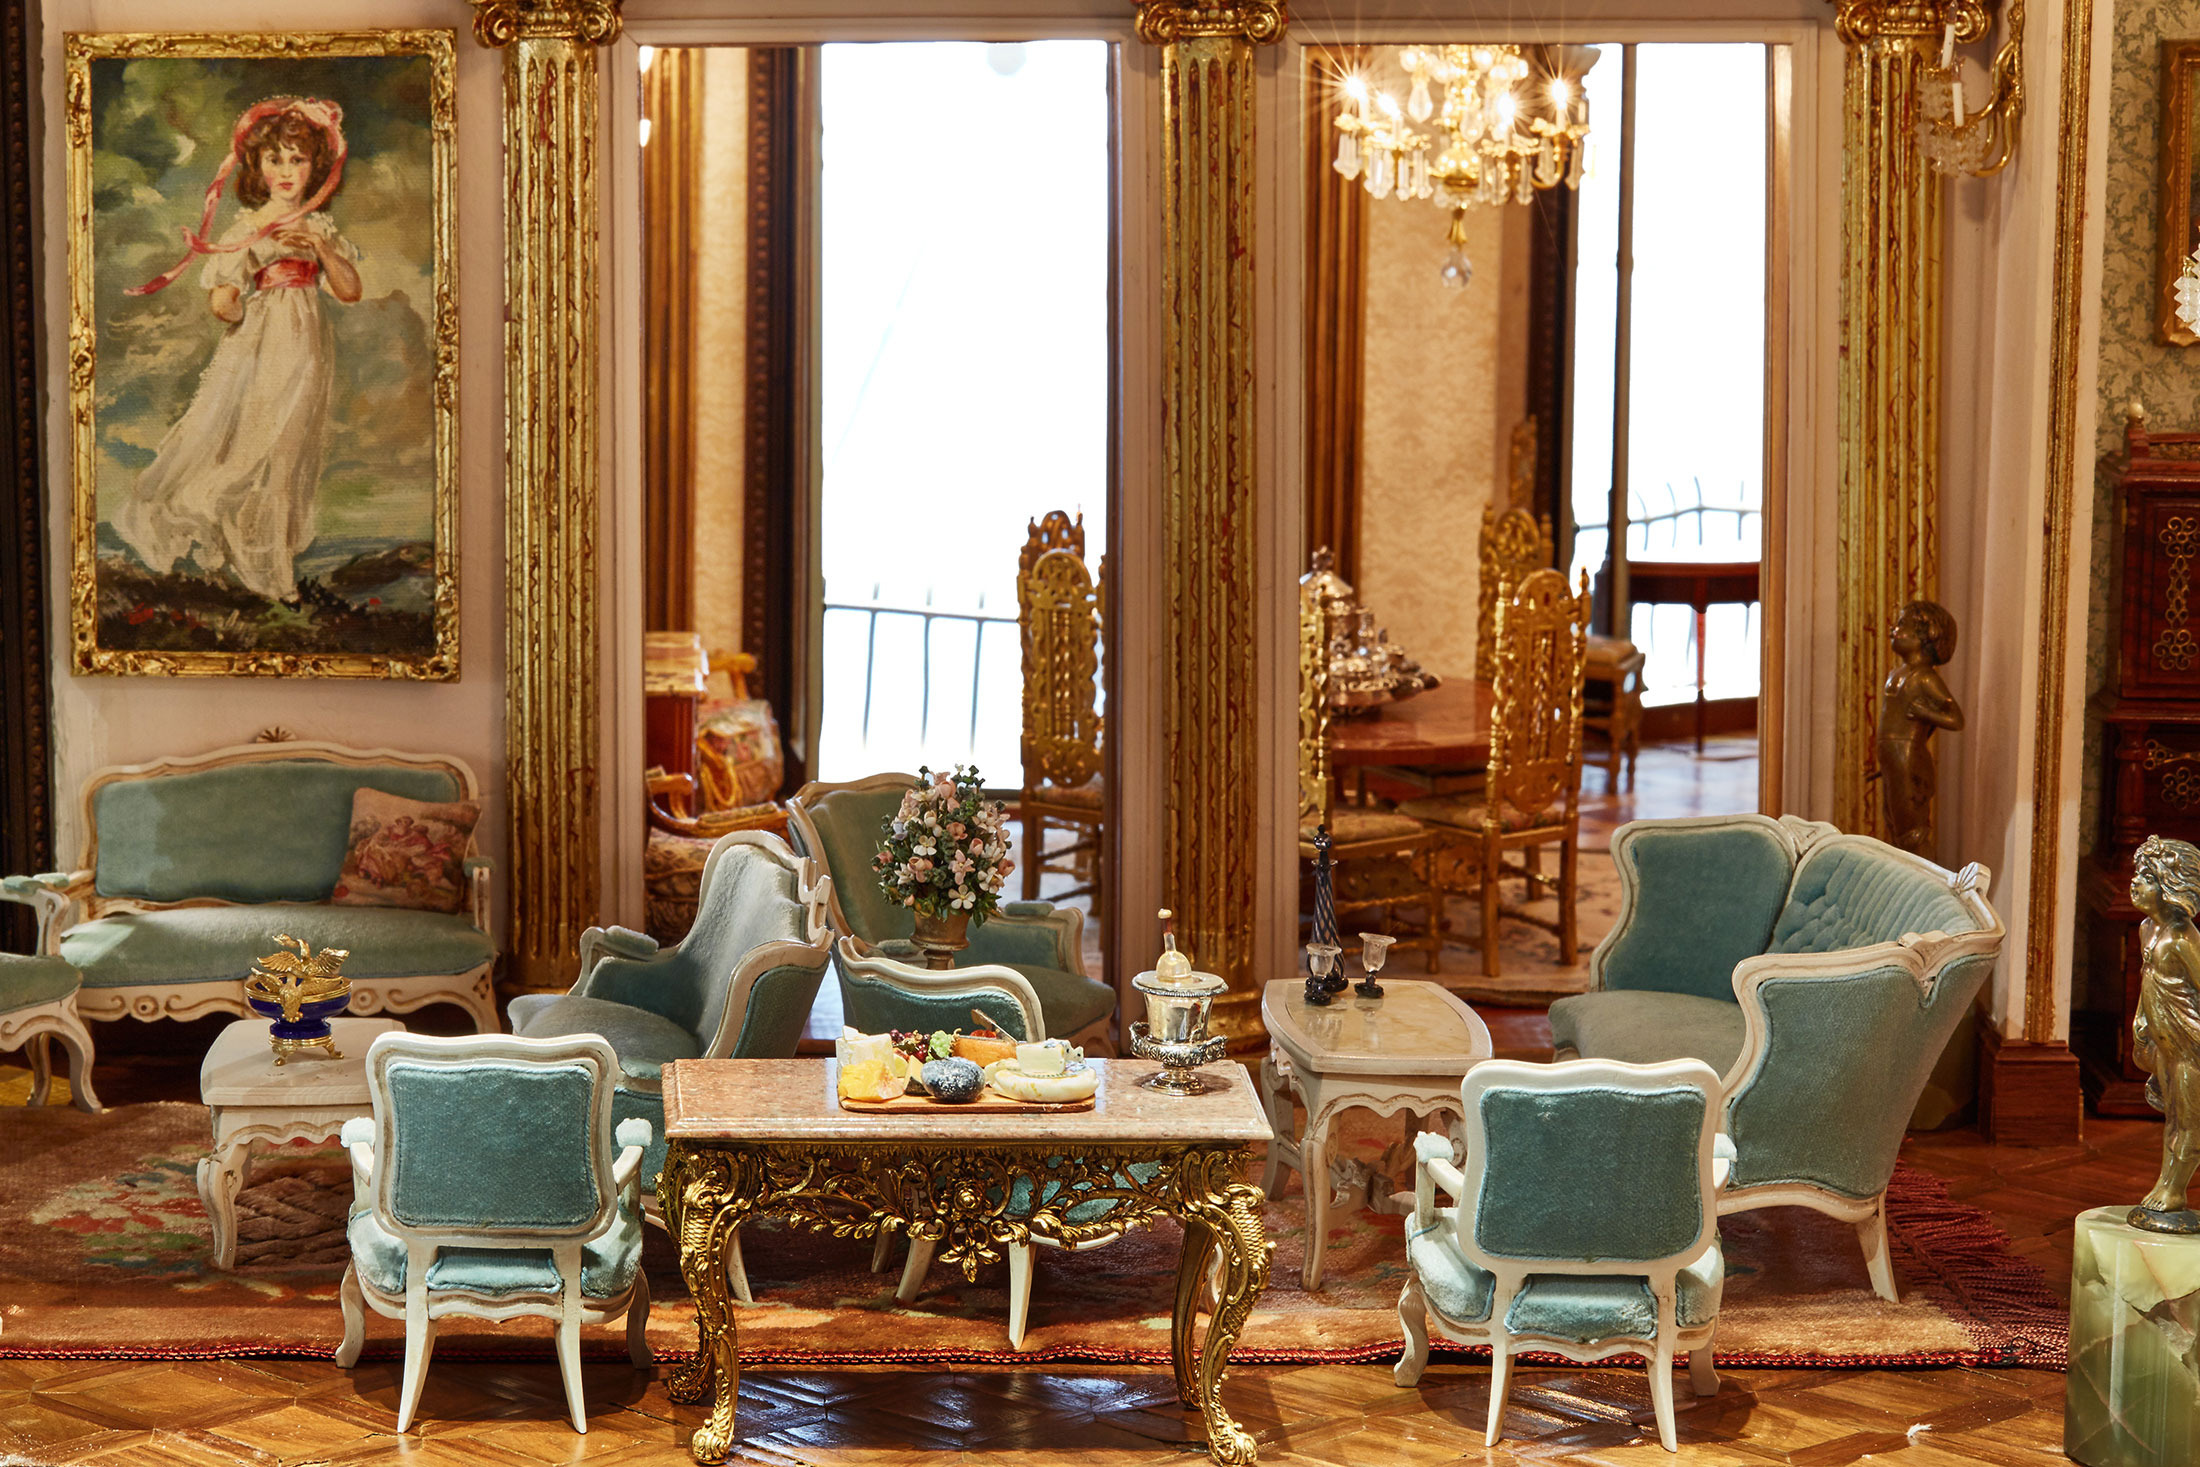 Bộ salon tuyệt đẹp màu xanh được bày biện trên một tấm thảm khâu tay, bên cạnh là lọ hoa bằng ngọc lưu ly và bức tranh sơn dầu mang phong cách của thế kỷ 18.